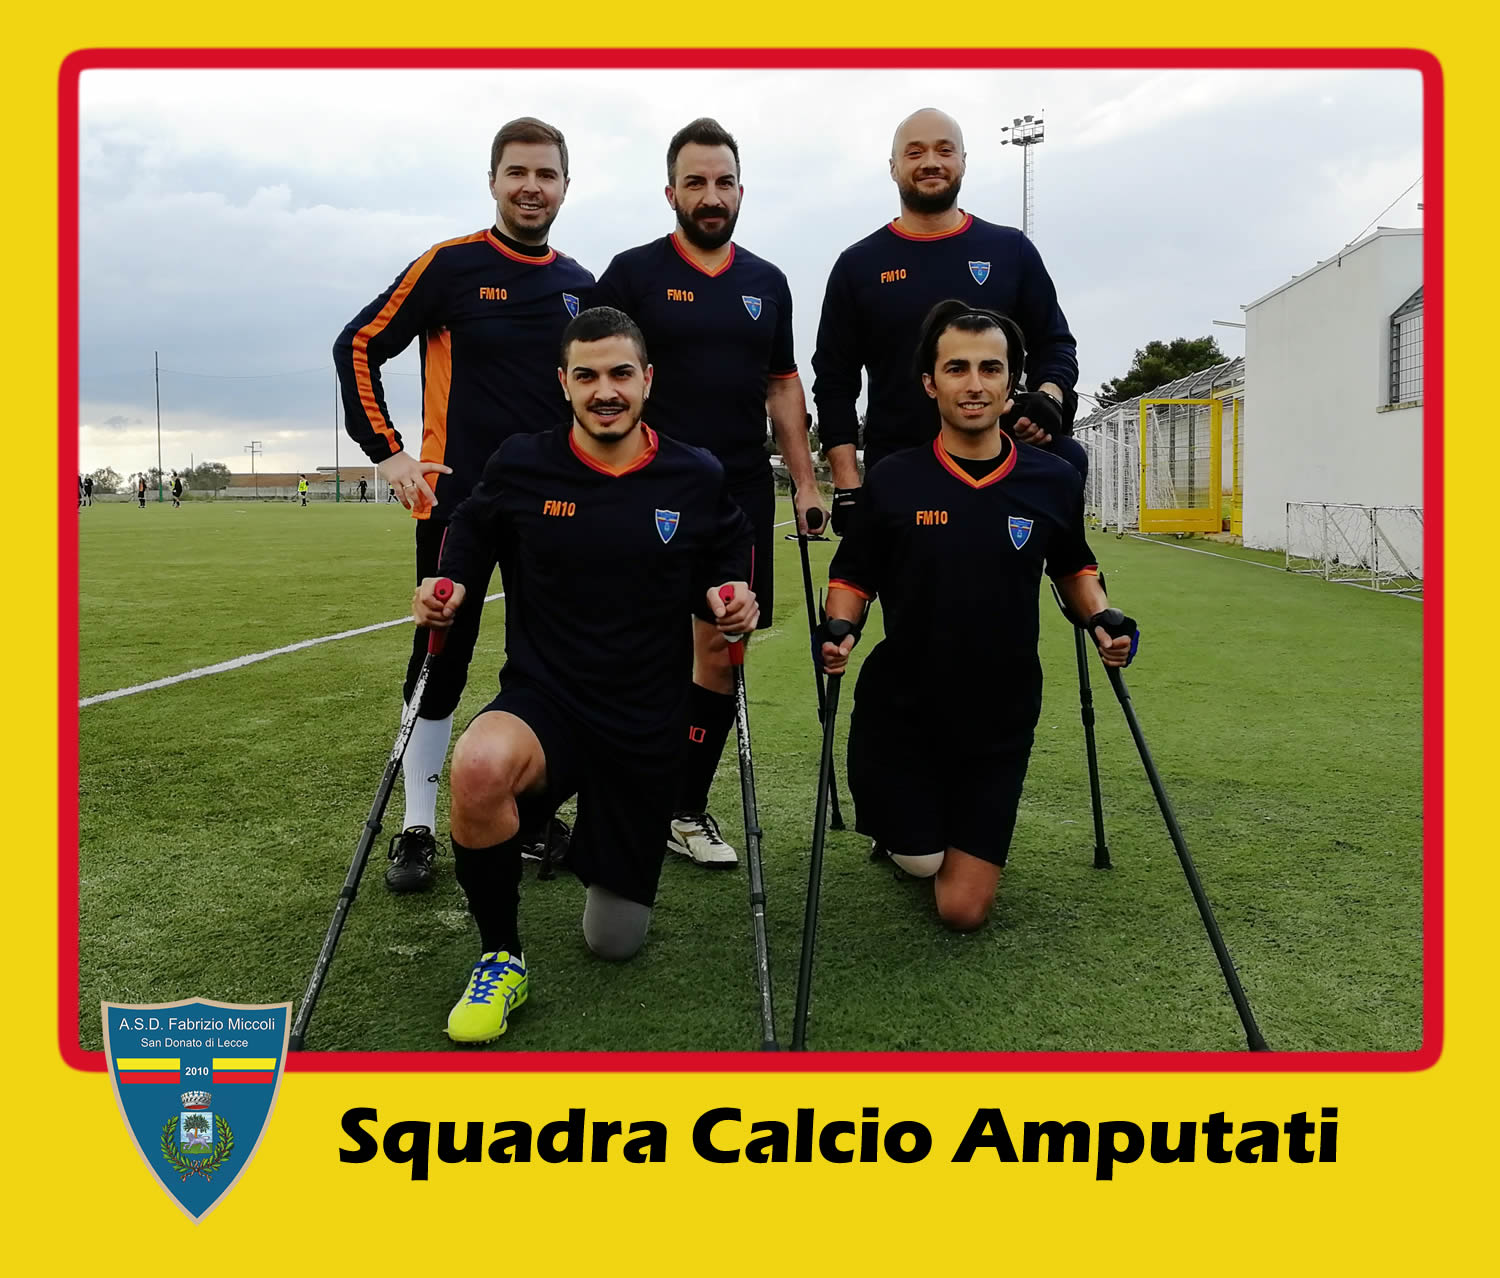 Squadra Calcio Amputati Lecce